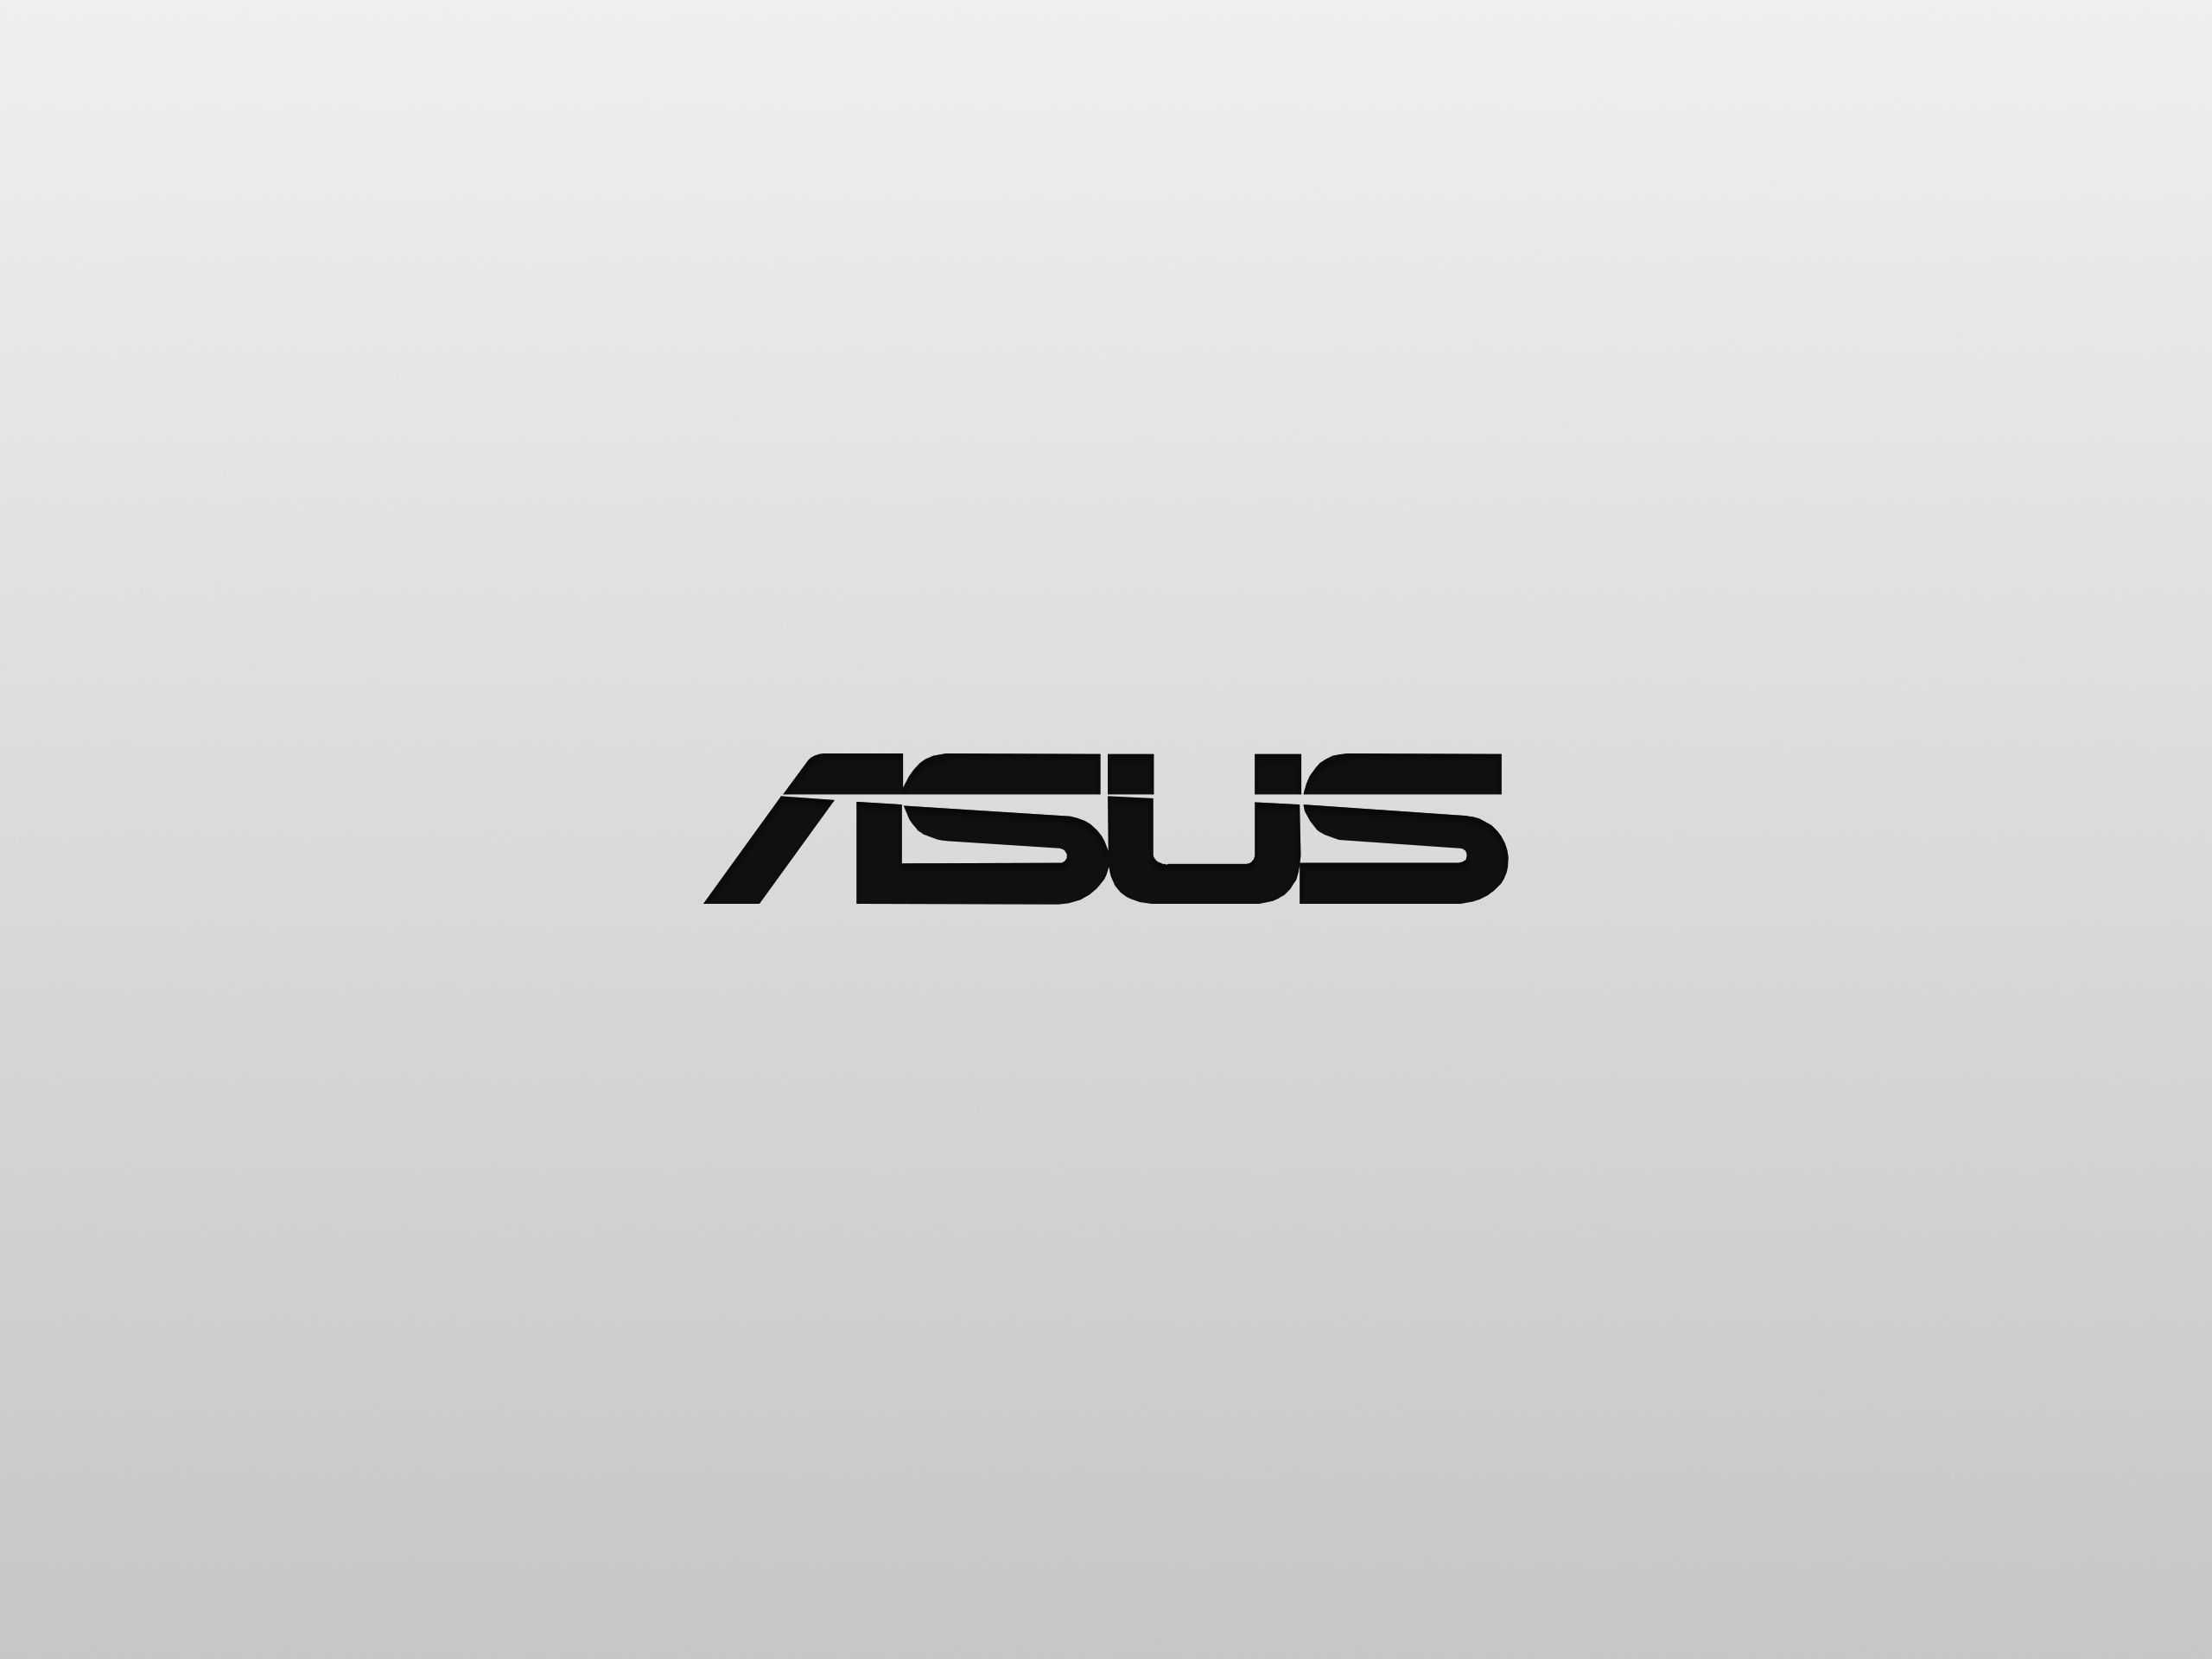 Asus Logo Wallpaper. Asus, ? logo, Neon wallpaper